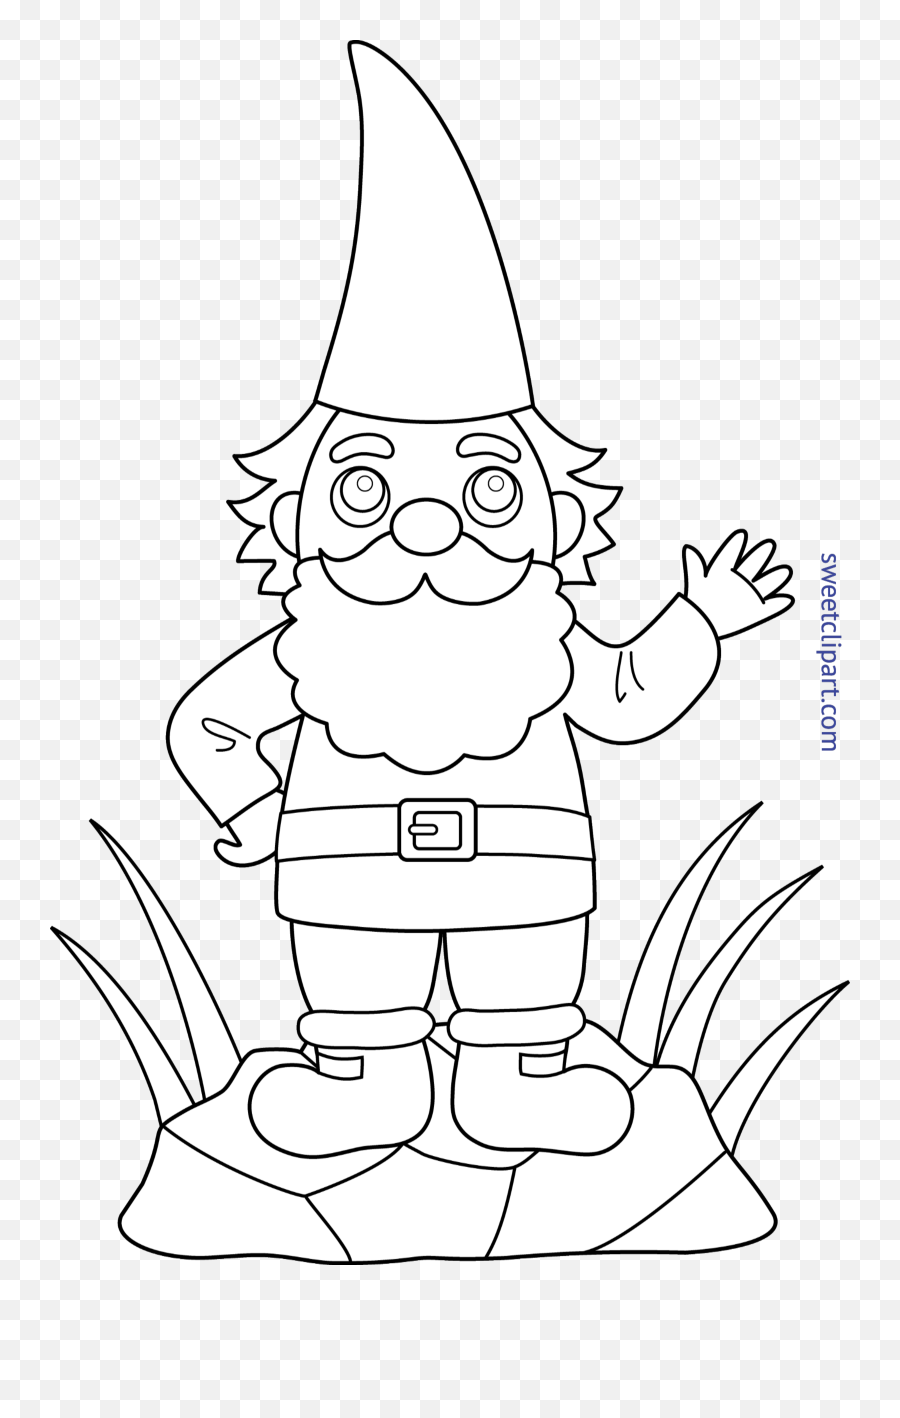 Clip Art - Cartoon Gnome Colouring Page Emoji,Gnome Clipart